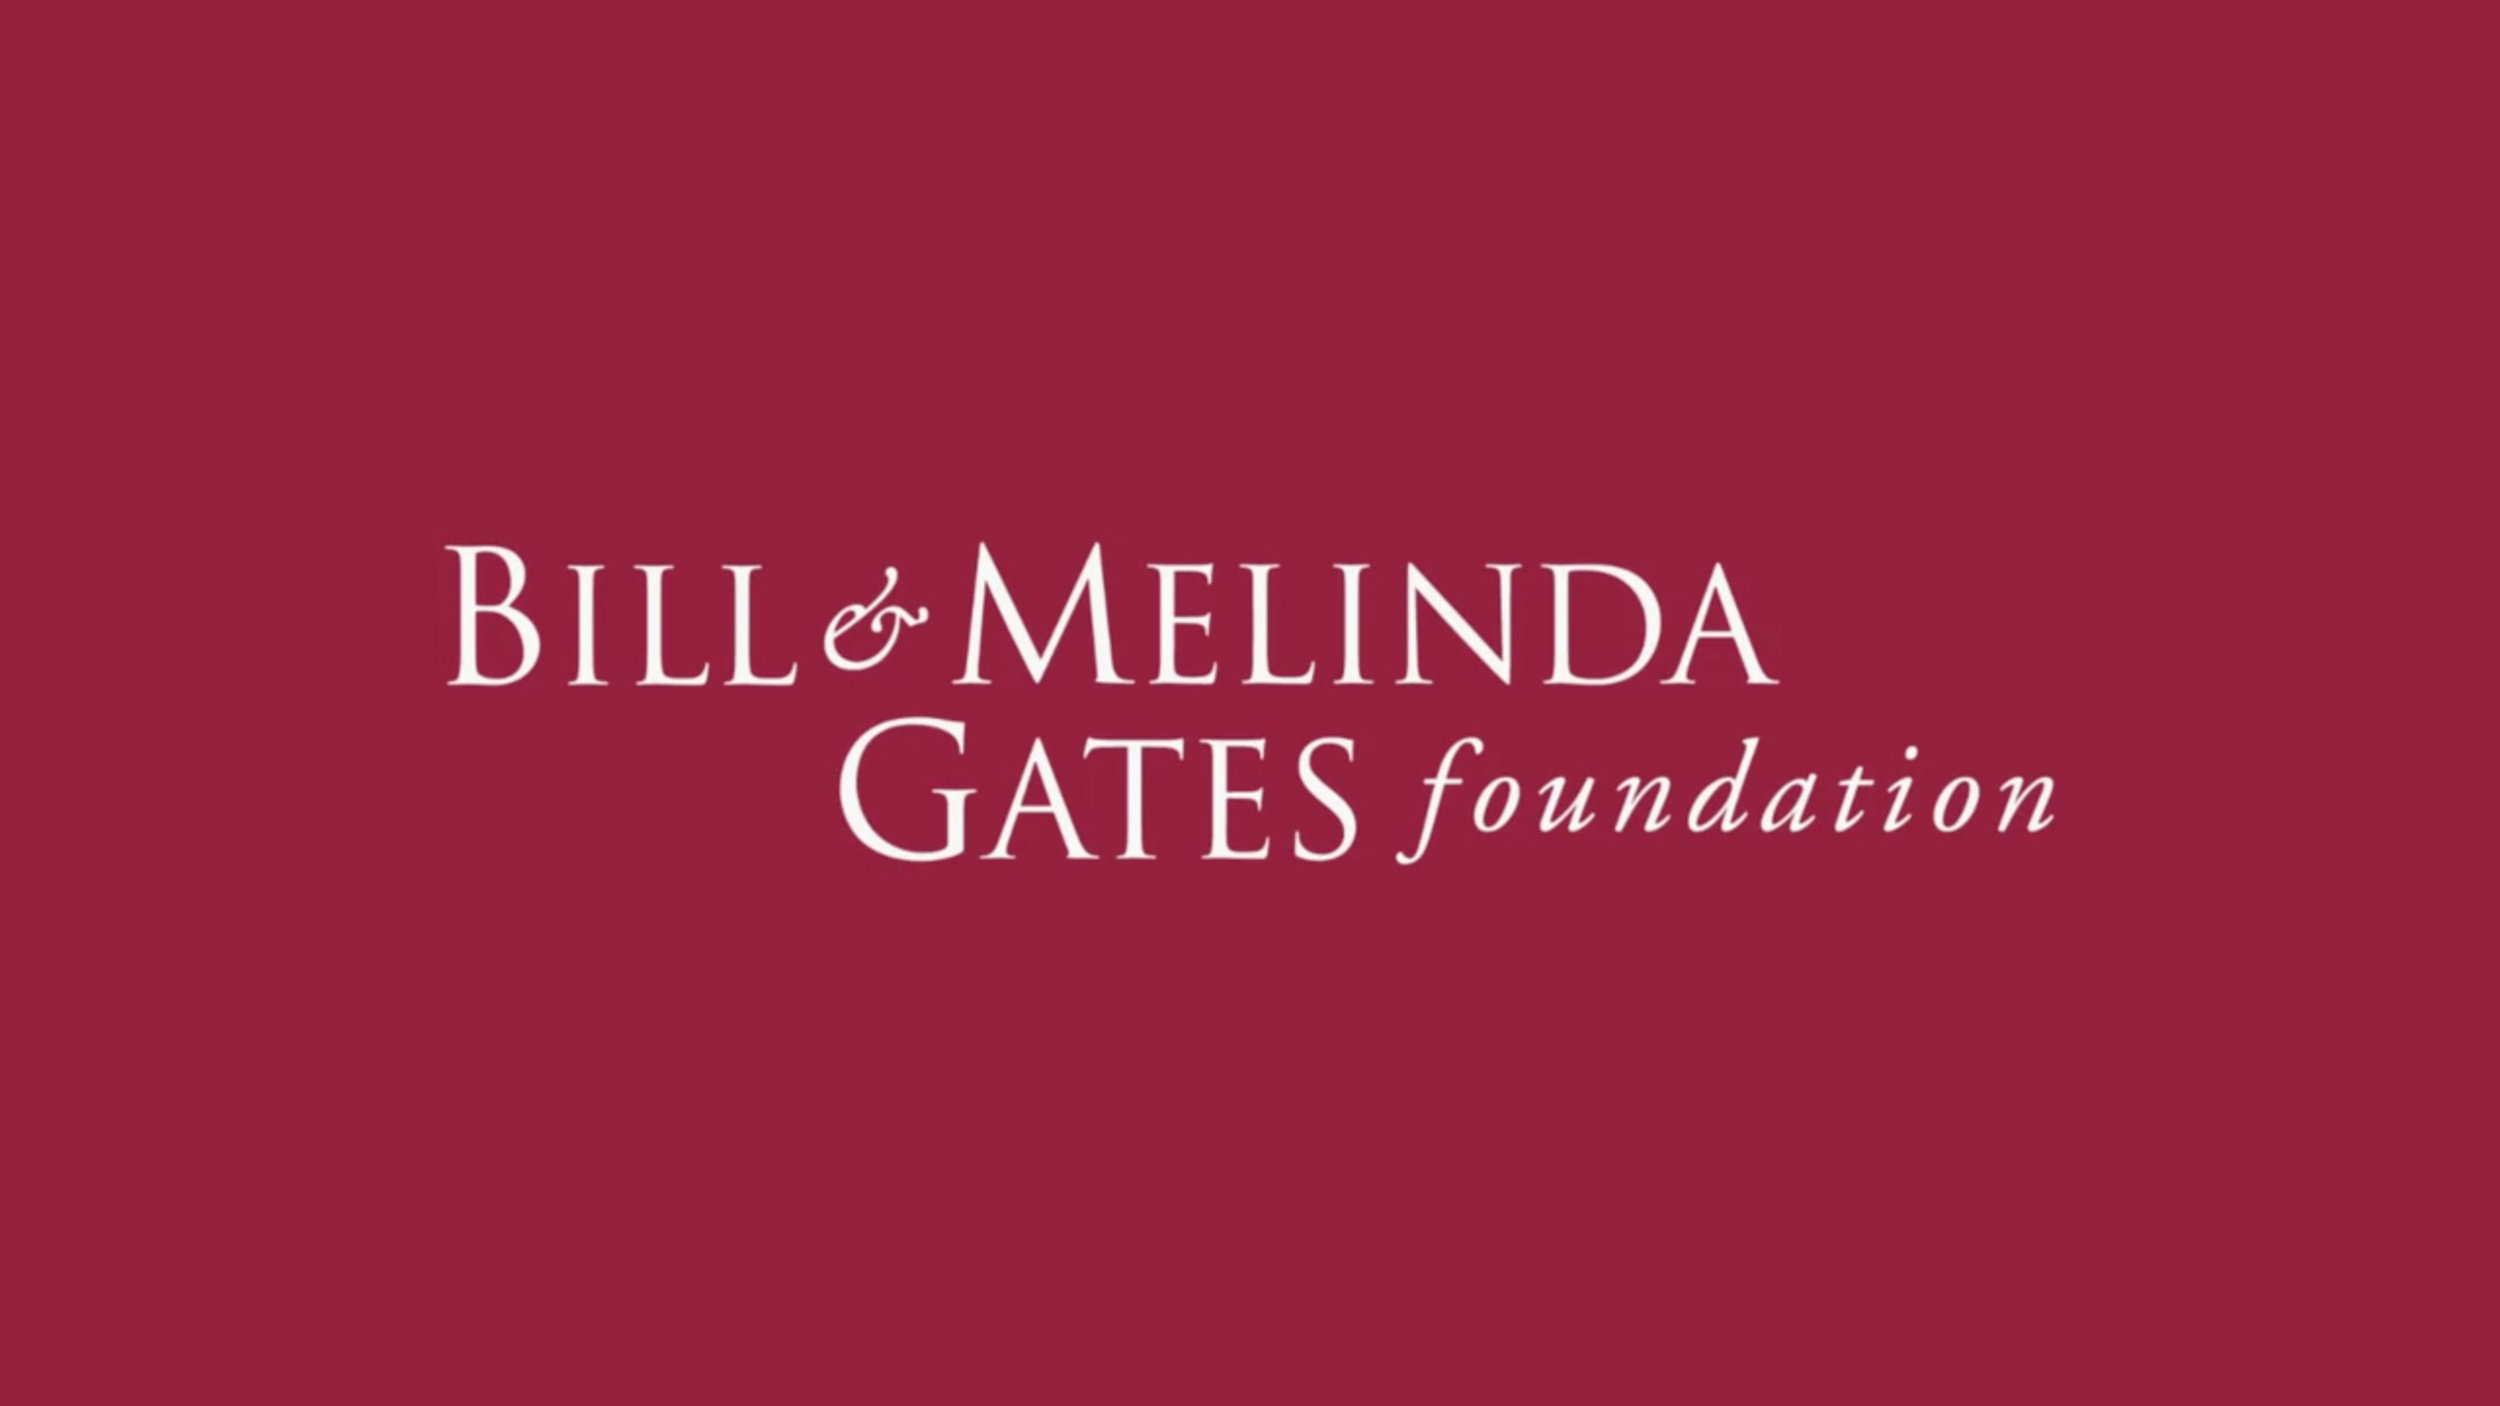 Фонд билла и мелинды гейтс. Bill & Melinda Gates Foundation логотип. Благотворительный фонд Билла и Мелинды Гейтс. Фонд Билла Гейтса. Здание фонда Билла и Мелинды Гейтс.